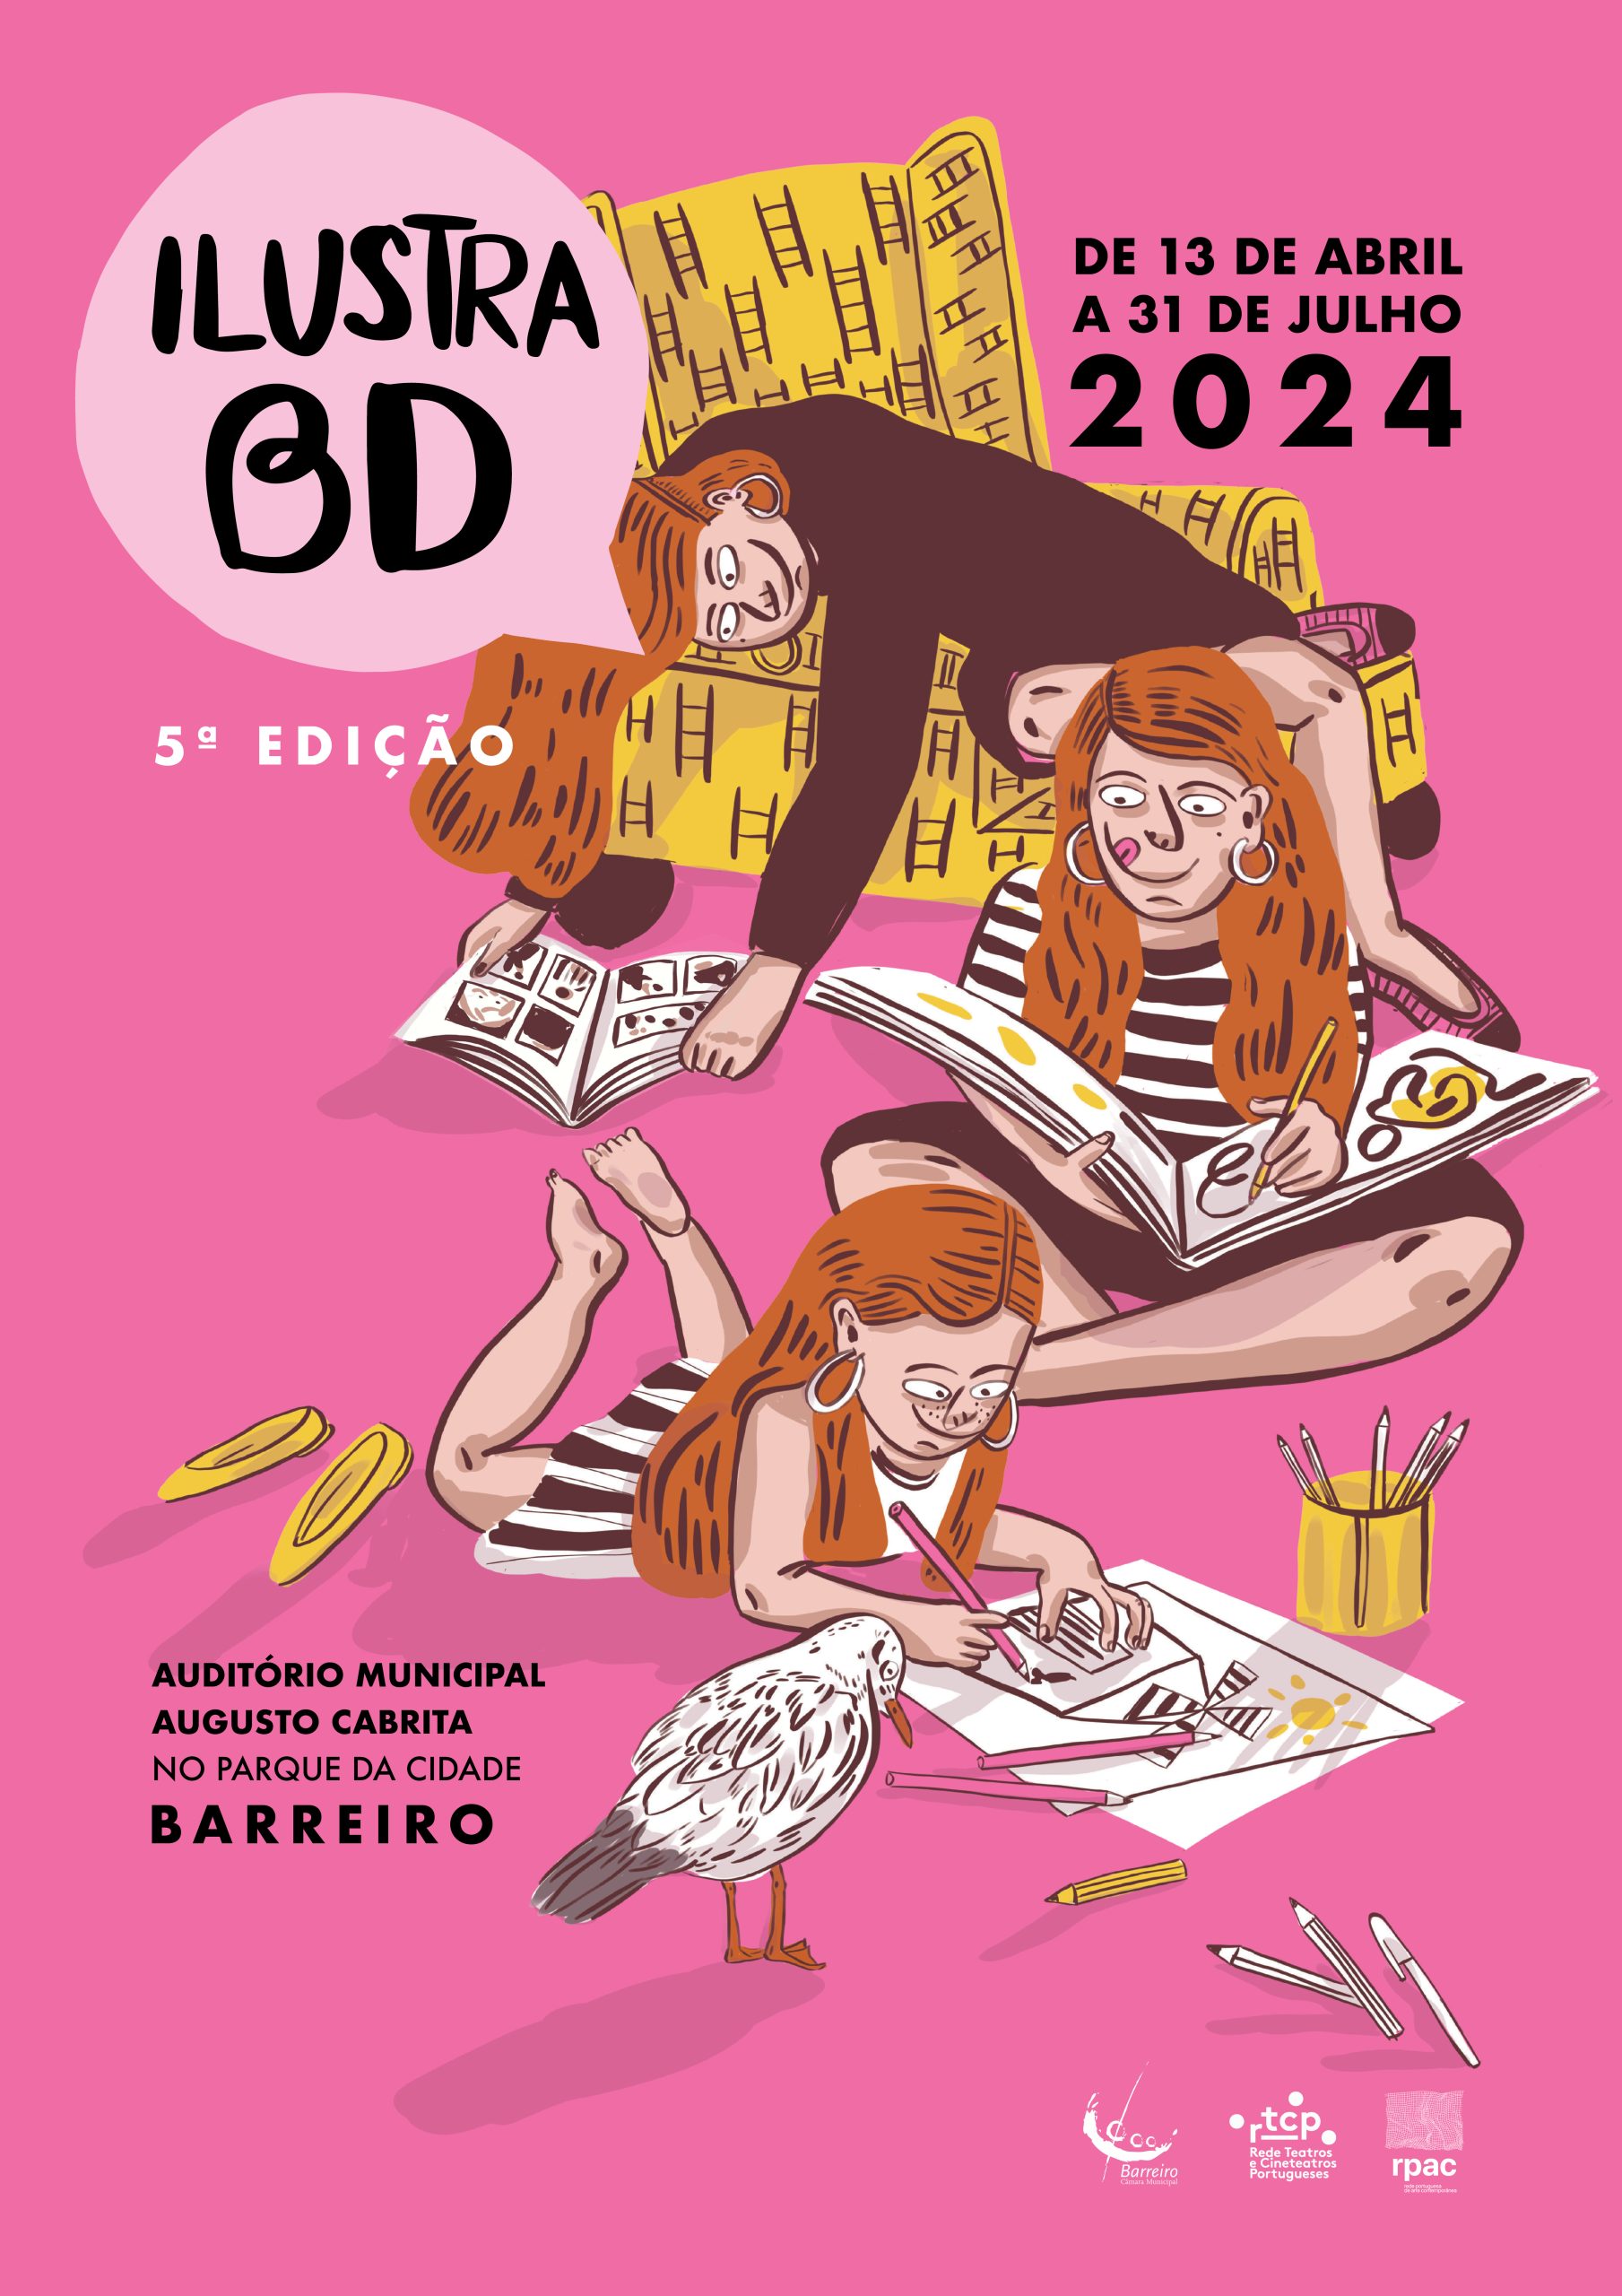 Cartaz da 5ª edição IlustraBD de 2024 no Auditório Municipal Augusto Cabrita, no Barreiro